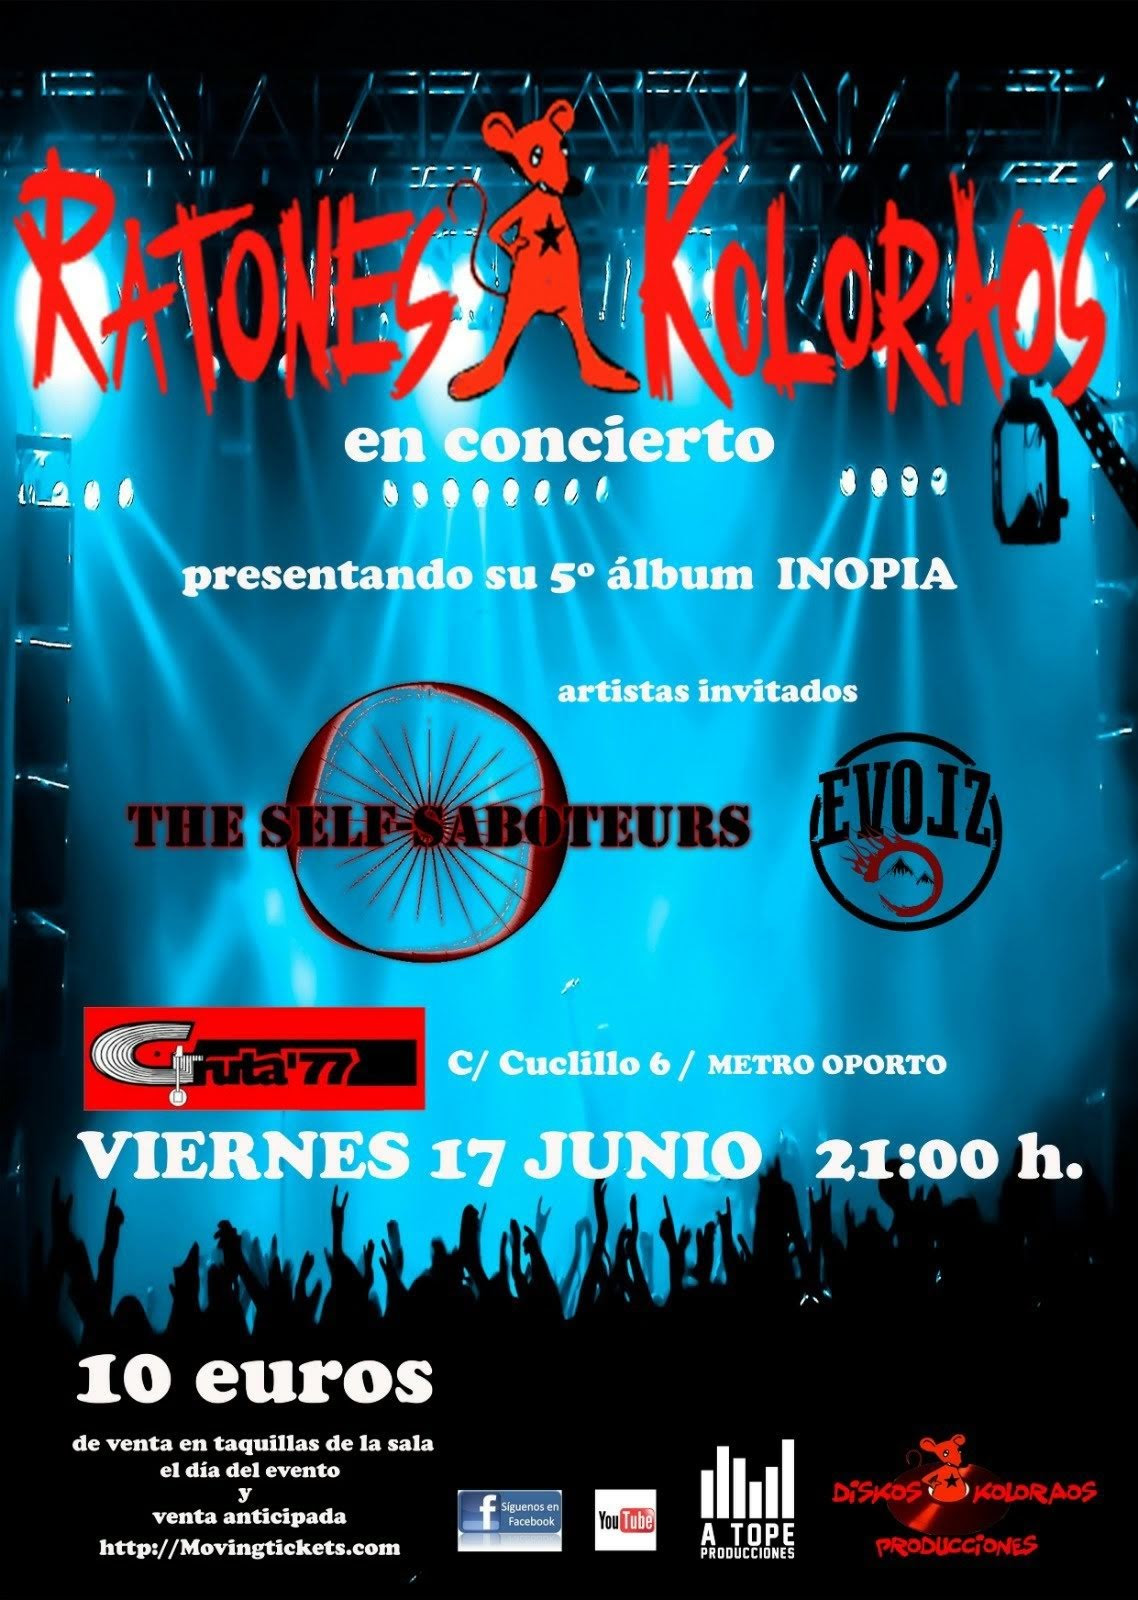 Ratones Koloraos estarán actuando el 17 de junio en Madrid